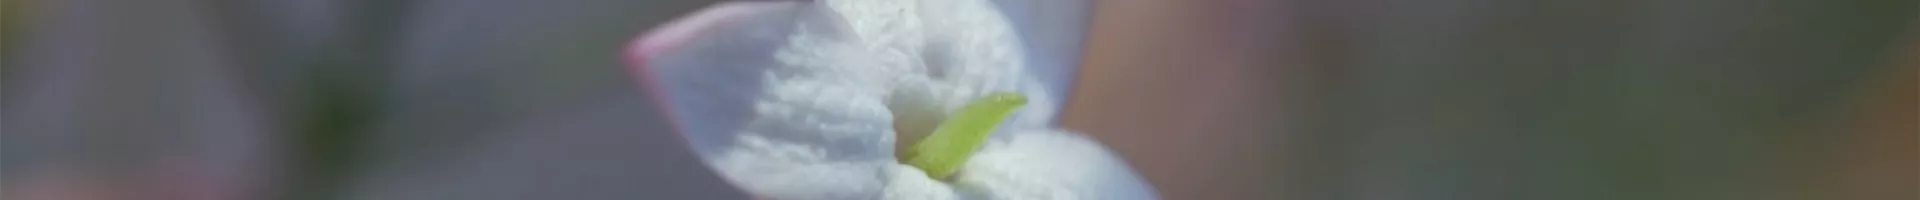 Zimmerjasmin - Einpflanzen in ein Gefäß (Thumbnail).jpg